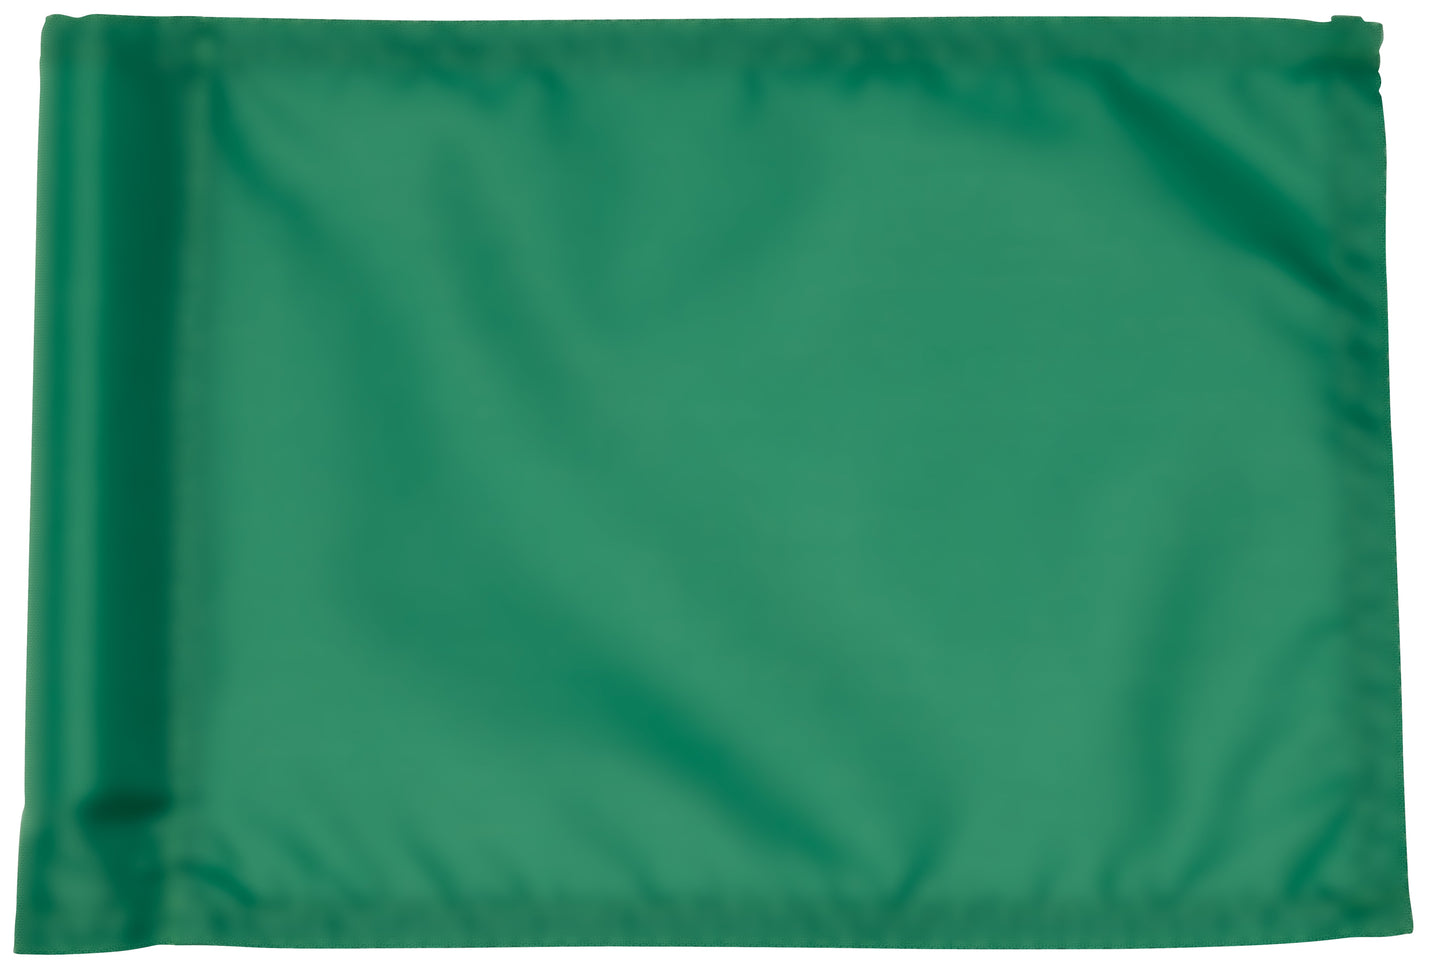 Golfflag, green, nylon fabric